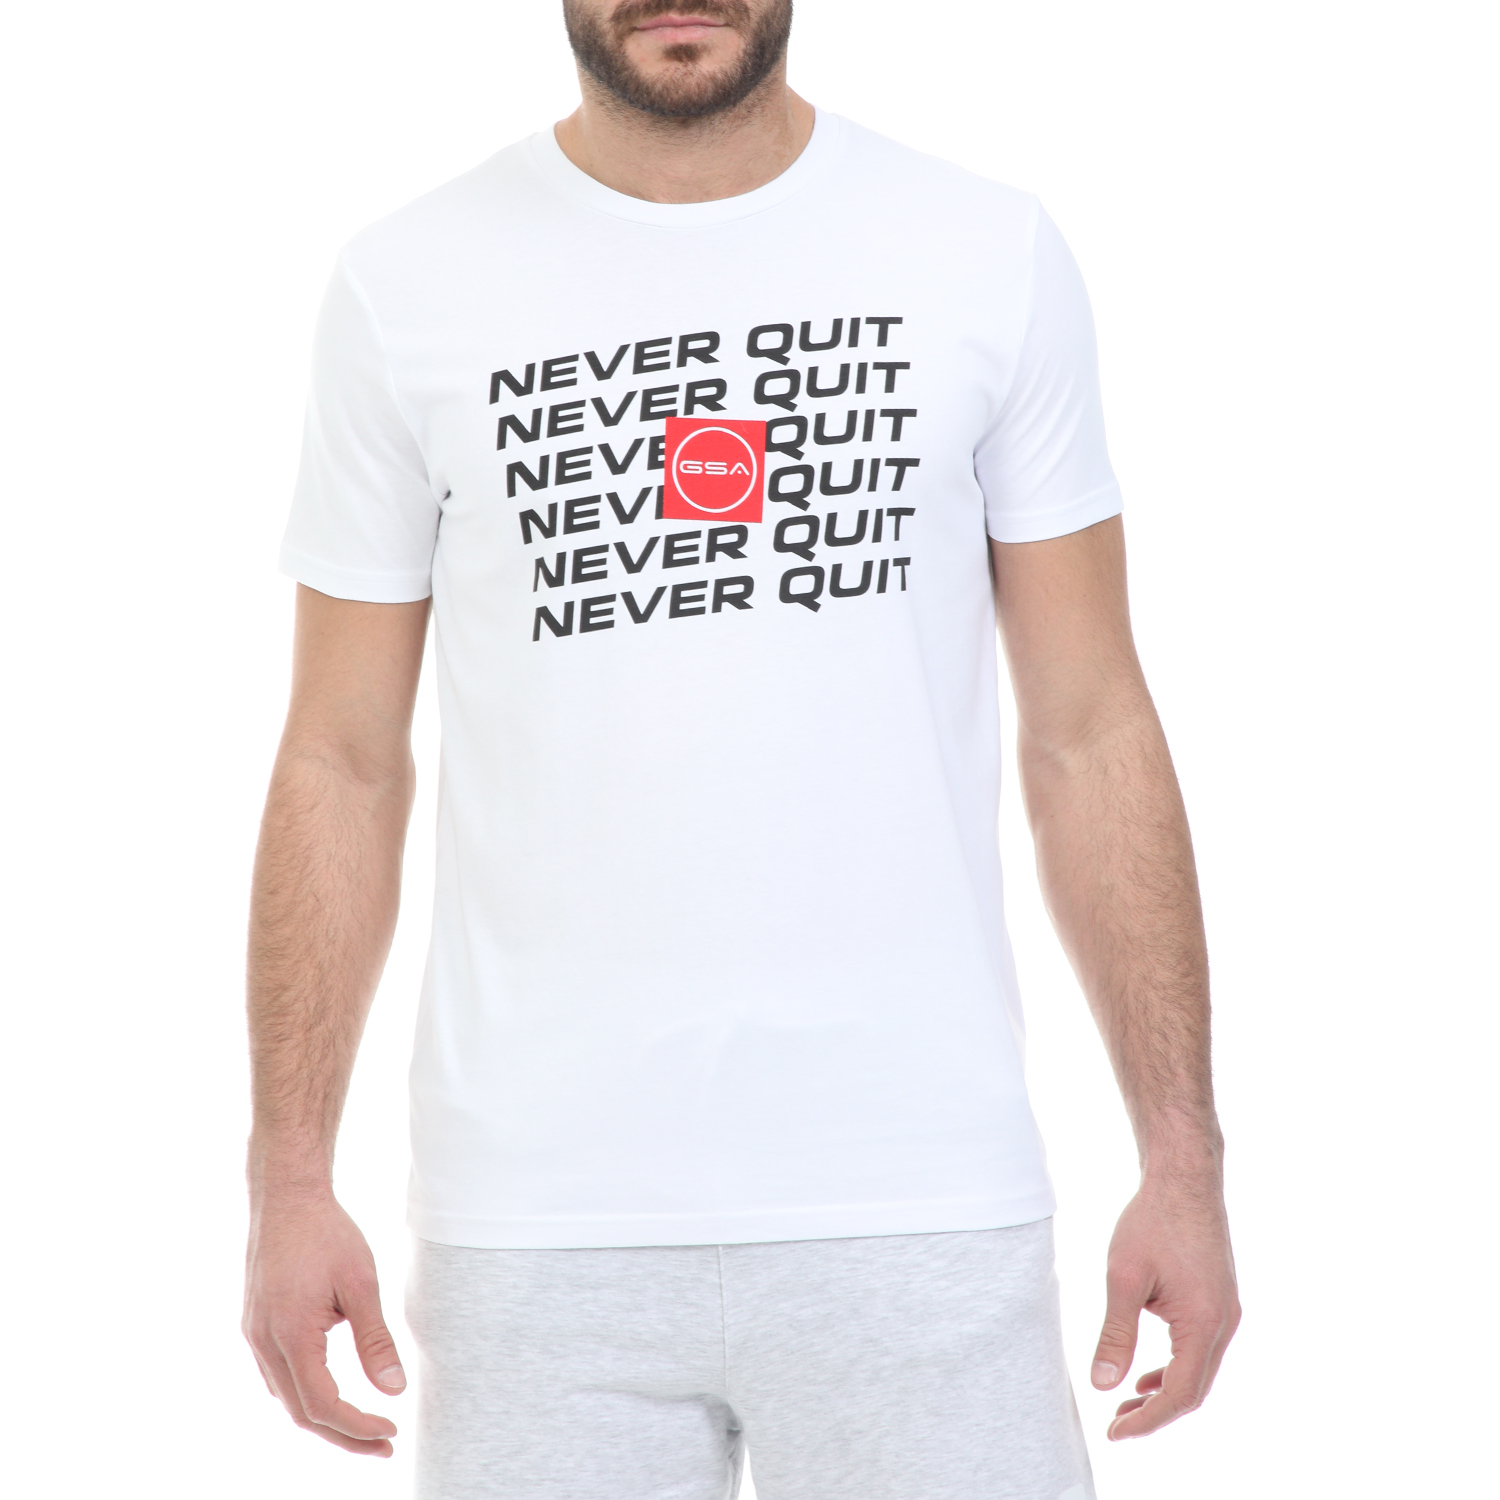 Ανδρικά/Ρούχα/Μπλούζες/Κοντομάνικες GSA - Ανδρικό t-shirt GSA ORGANIC PLUS λευκό